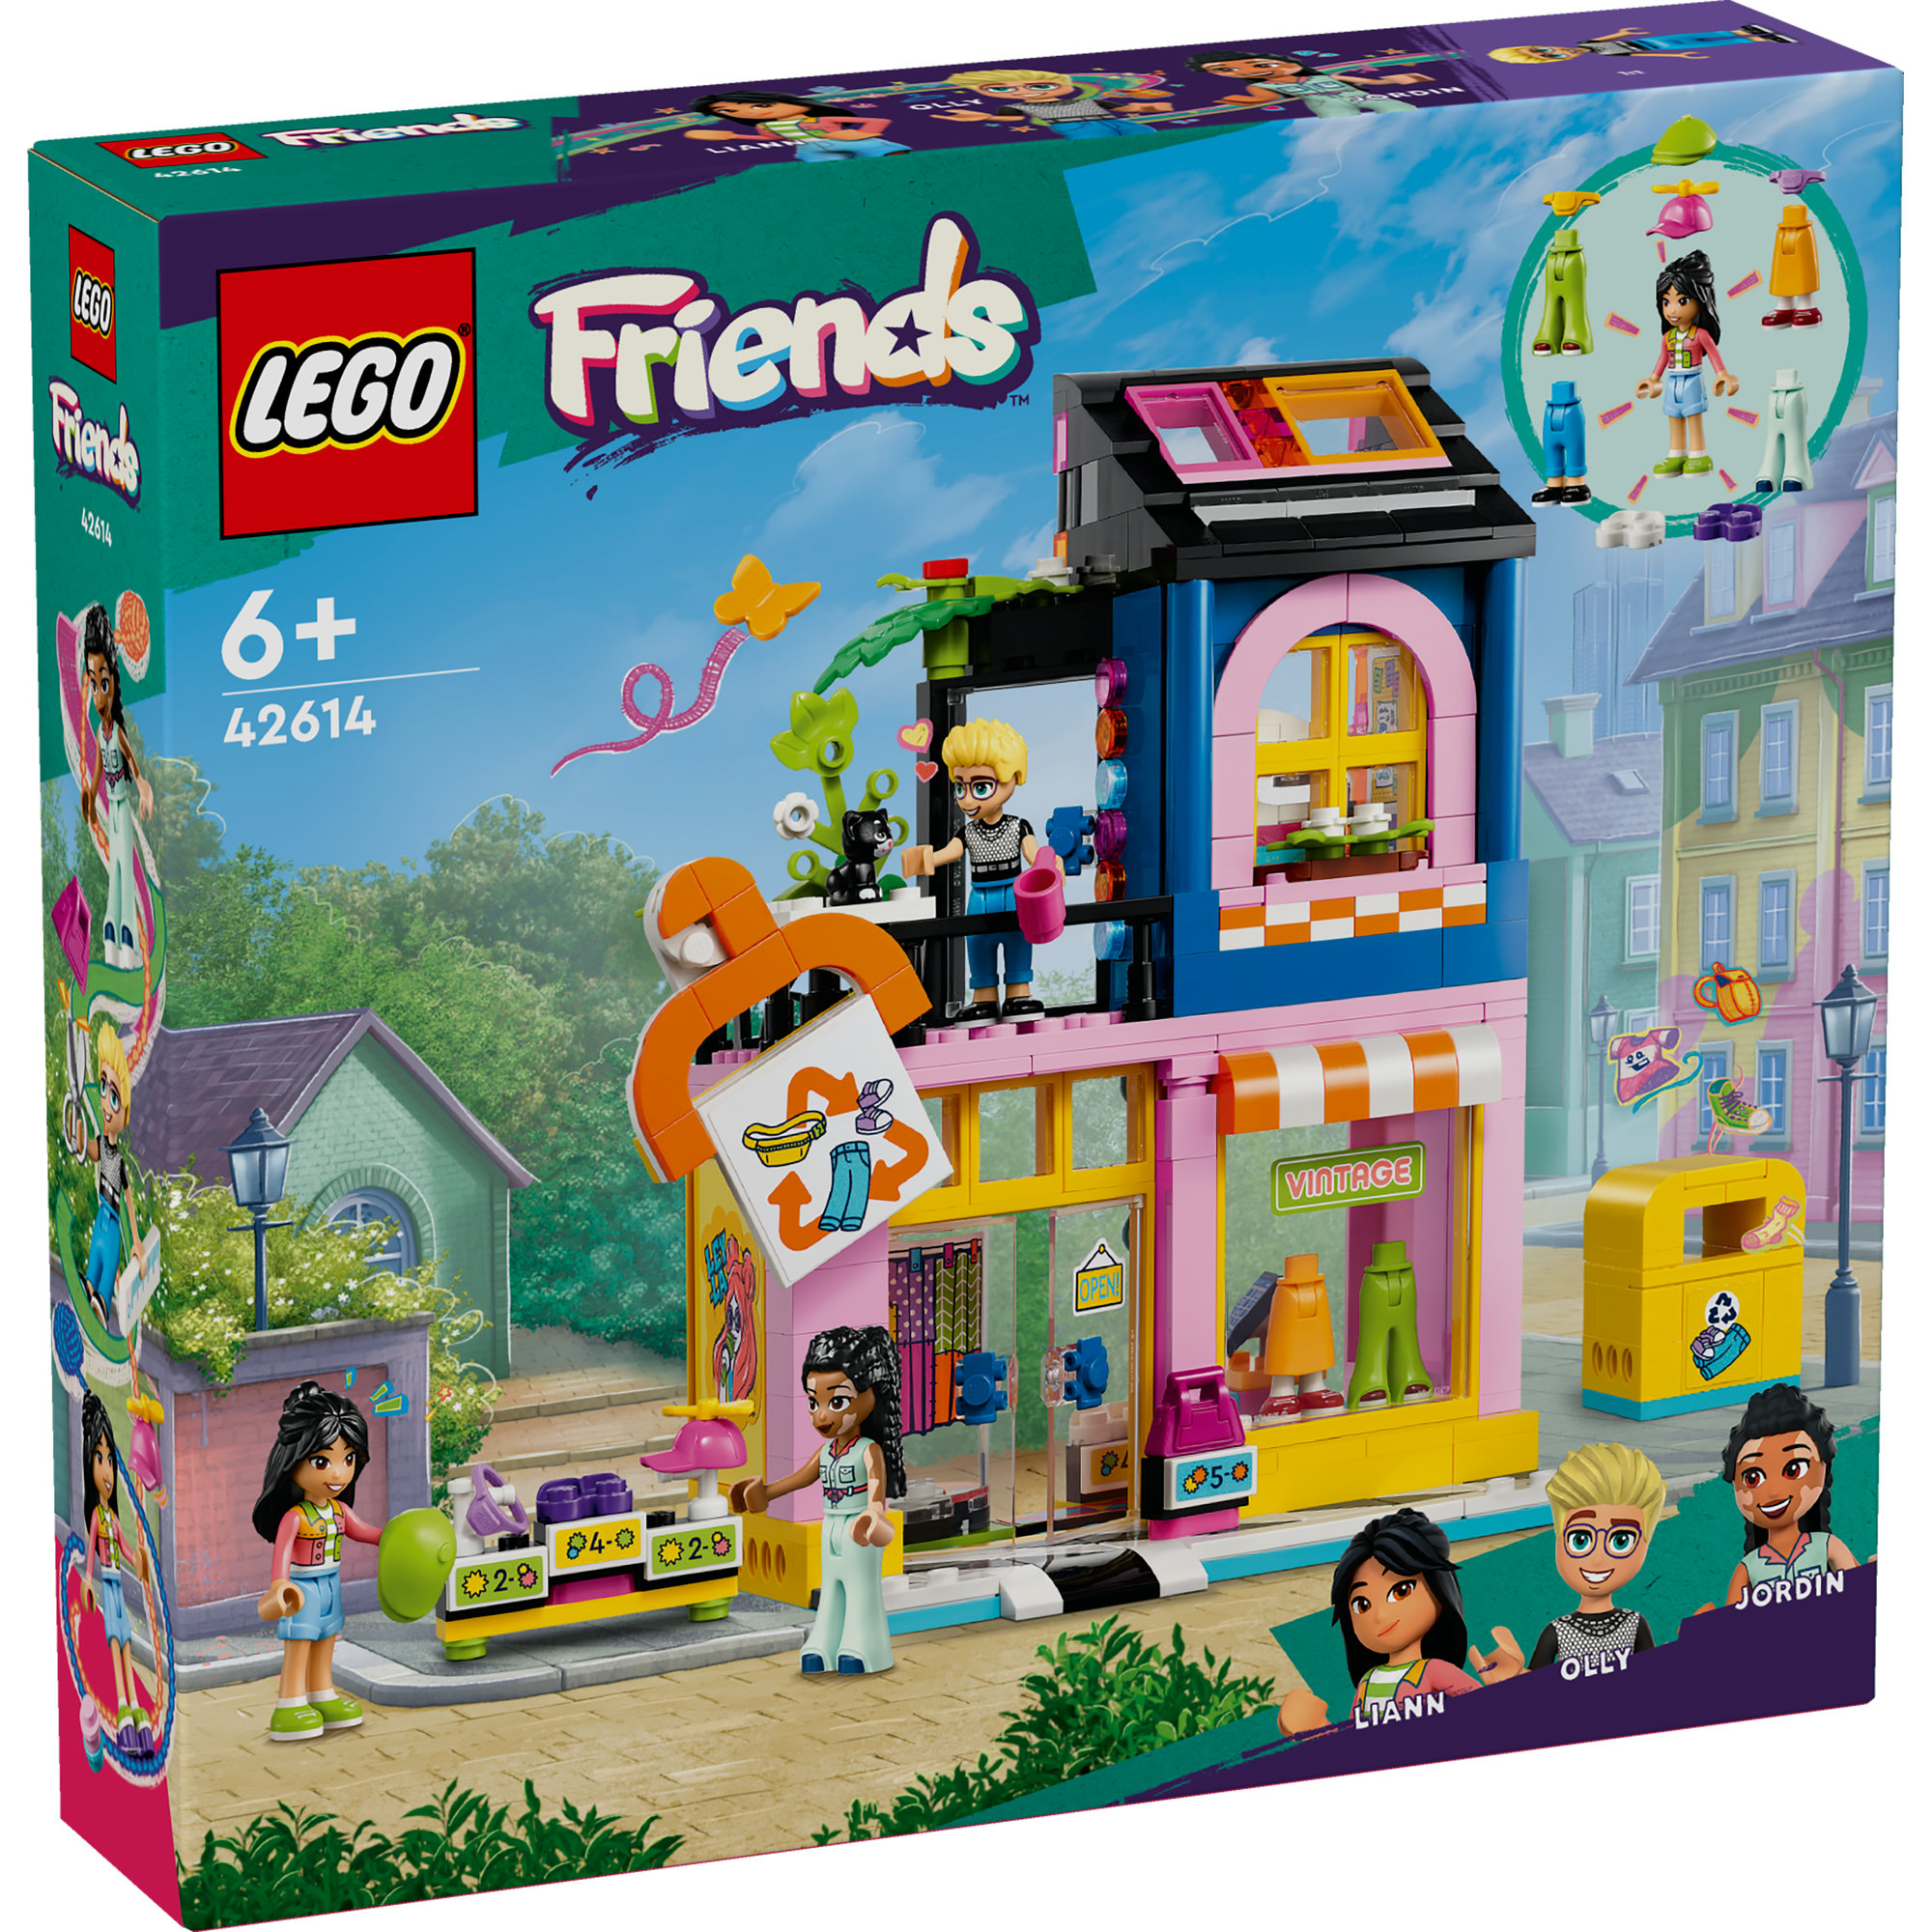 LEGO FRIENDS 42614 Đồ chơi lắp ráp Cửa hàng thời trang cổ điển (409 chi tiết)